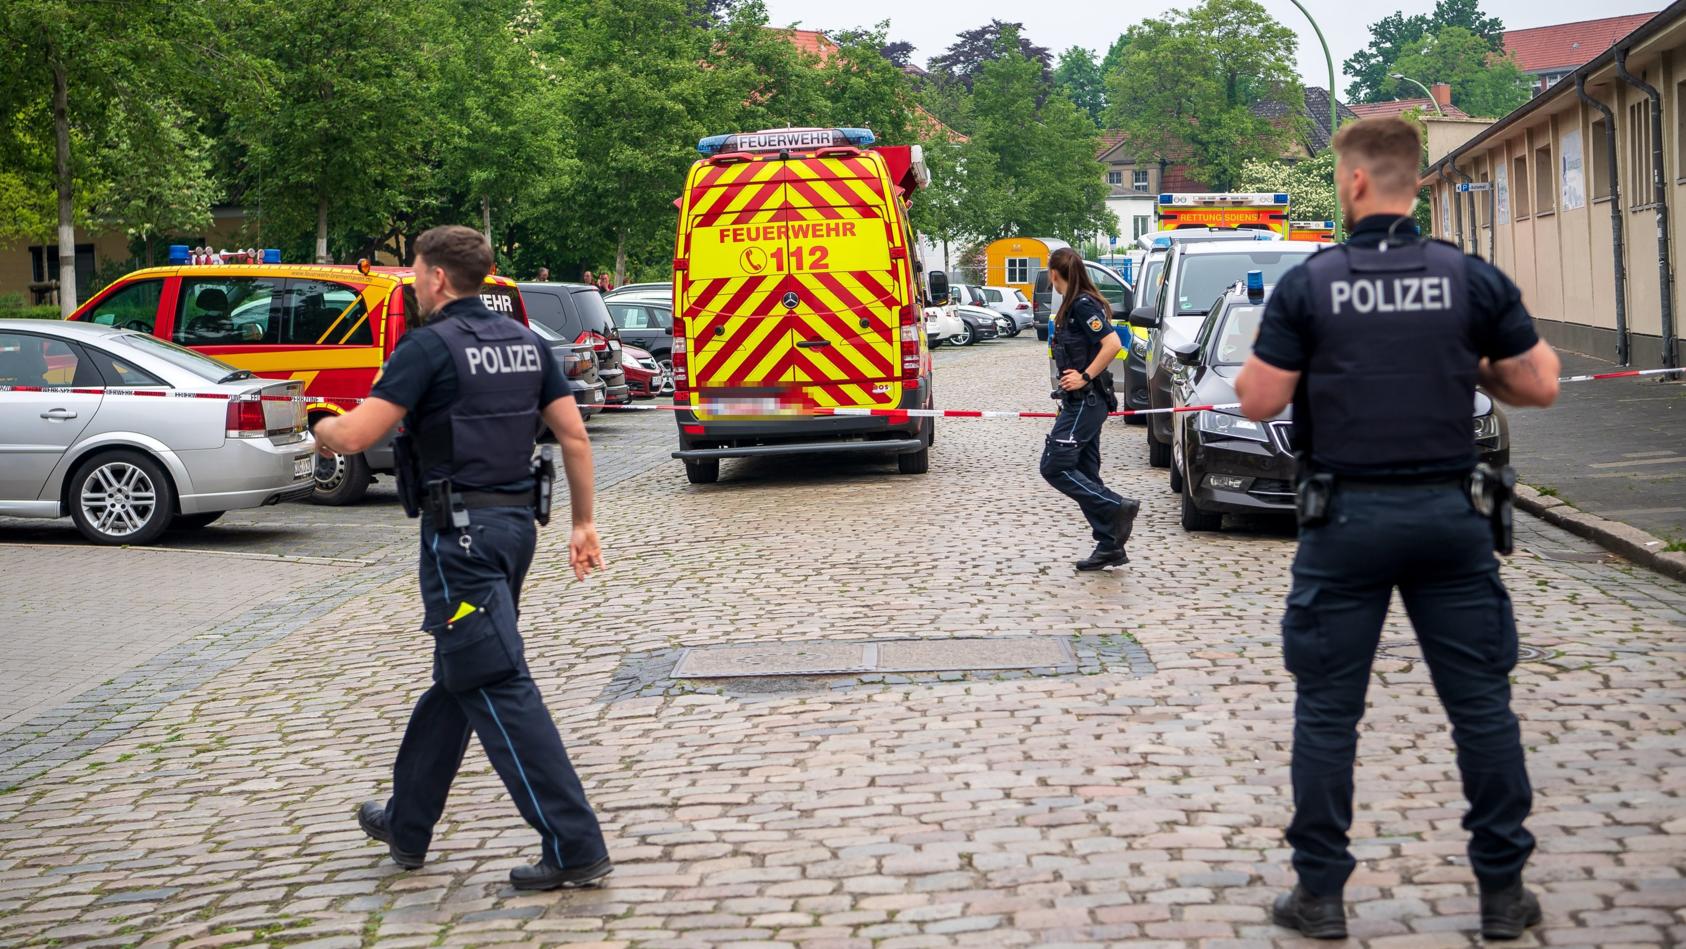 19.05.2022, Bremen, Bremerhaven: Einsatzkräfte der Polizei und Feuerwehr sind vor einer Schule im Einsatz. An einem Gymnasium in Bremerhaven ist am Donnerstag geschossen worden. Eine Frau sei mit der Waffe verletzt worden, sagte eine Polizeisprecheri